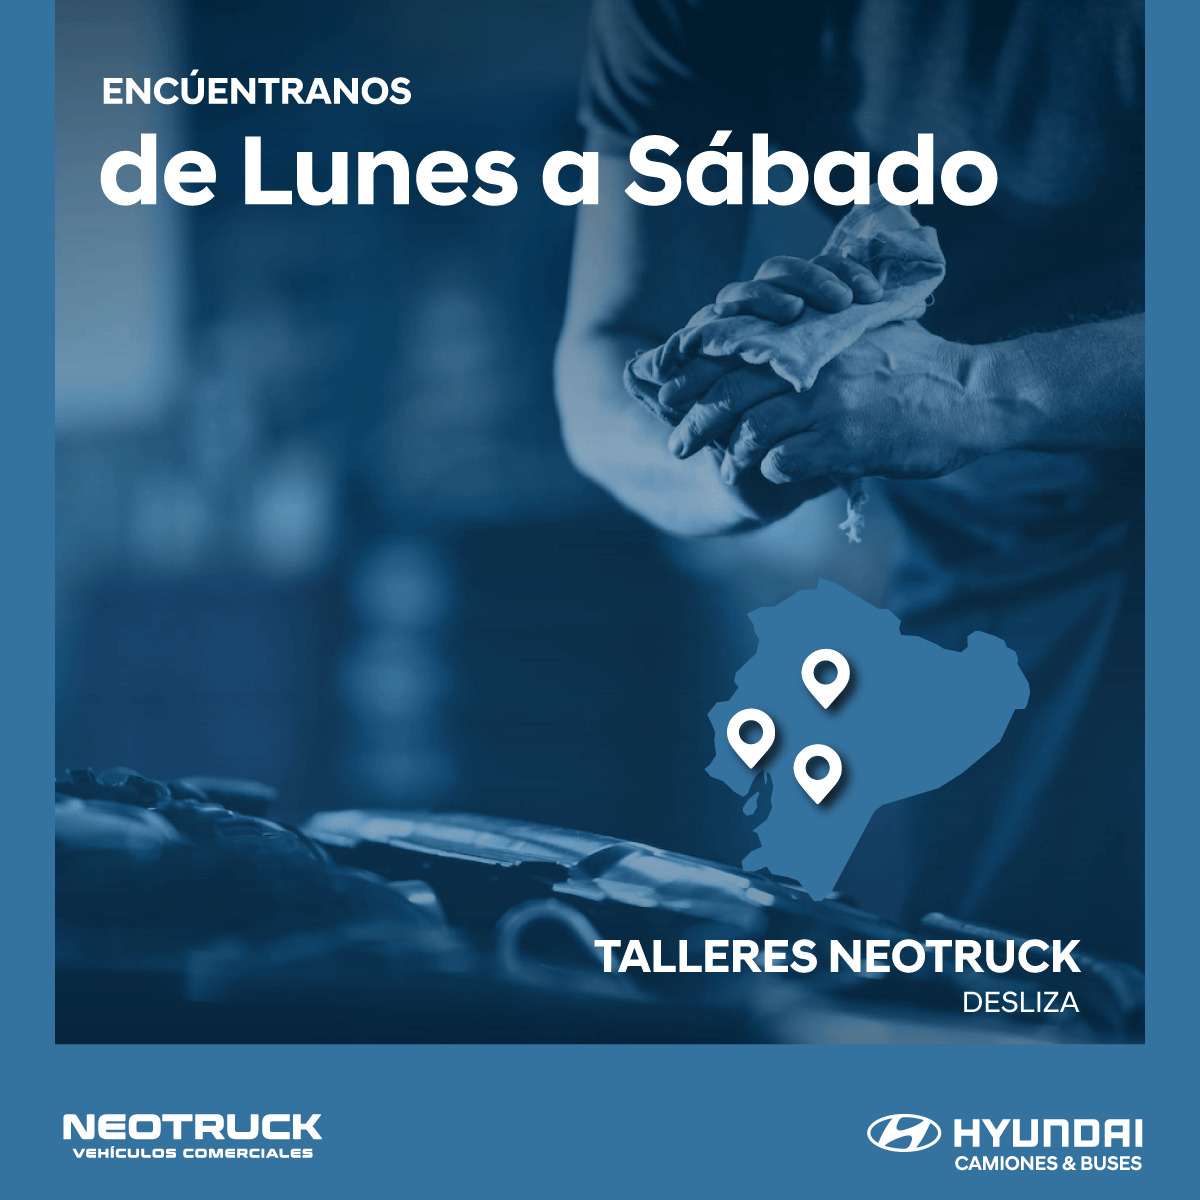 Talleres Neotruck Ecuadoir- Hyundai Camiones y Buses Ecuador